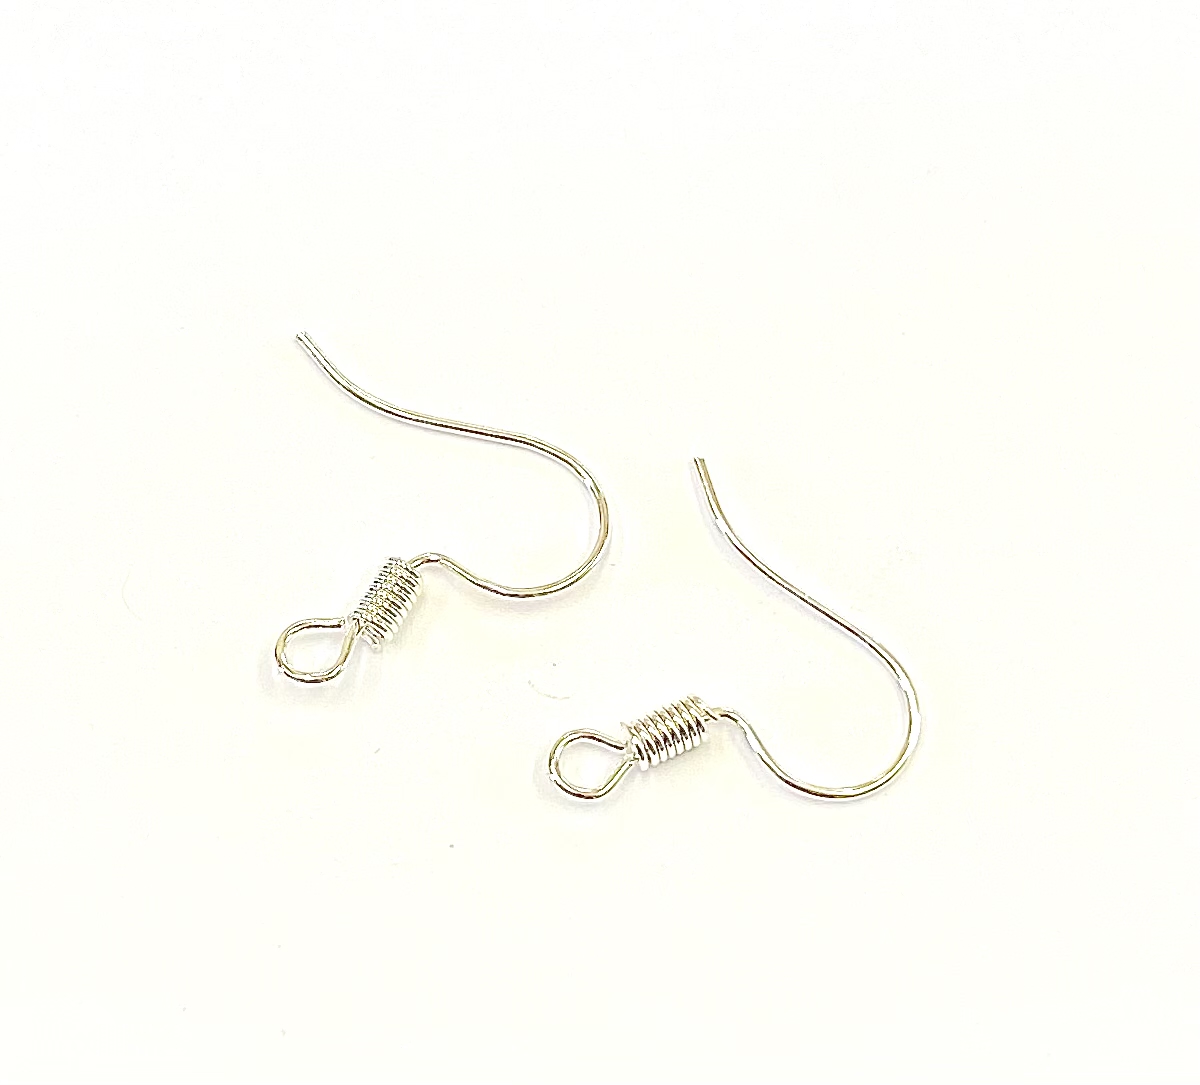 1 pair Silver Plated fish hook earring wires - Deborah Beads